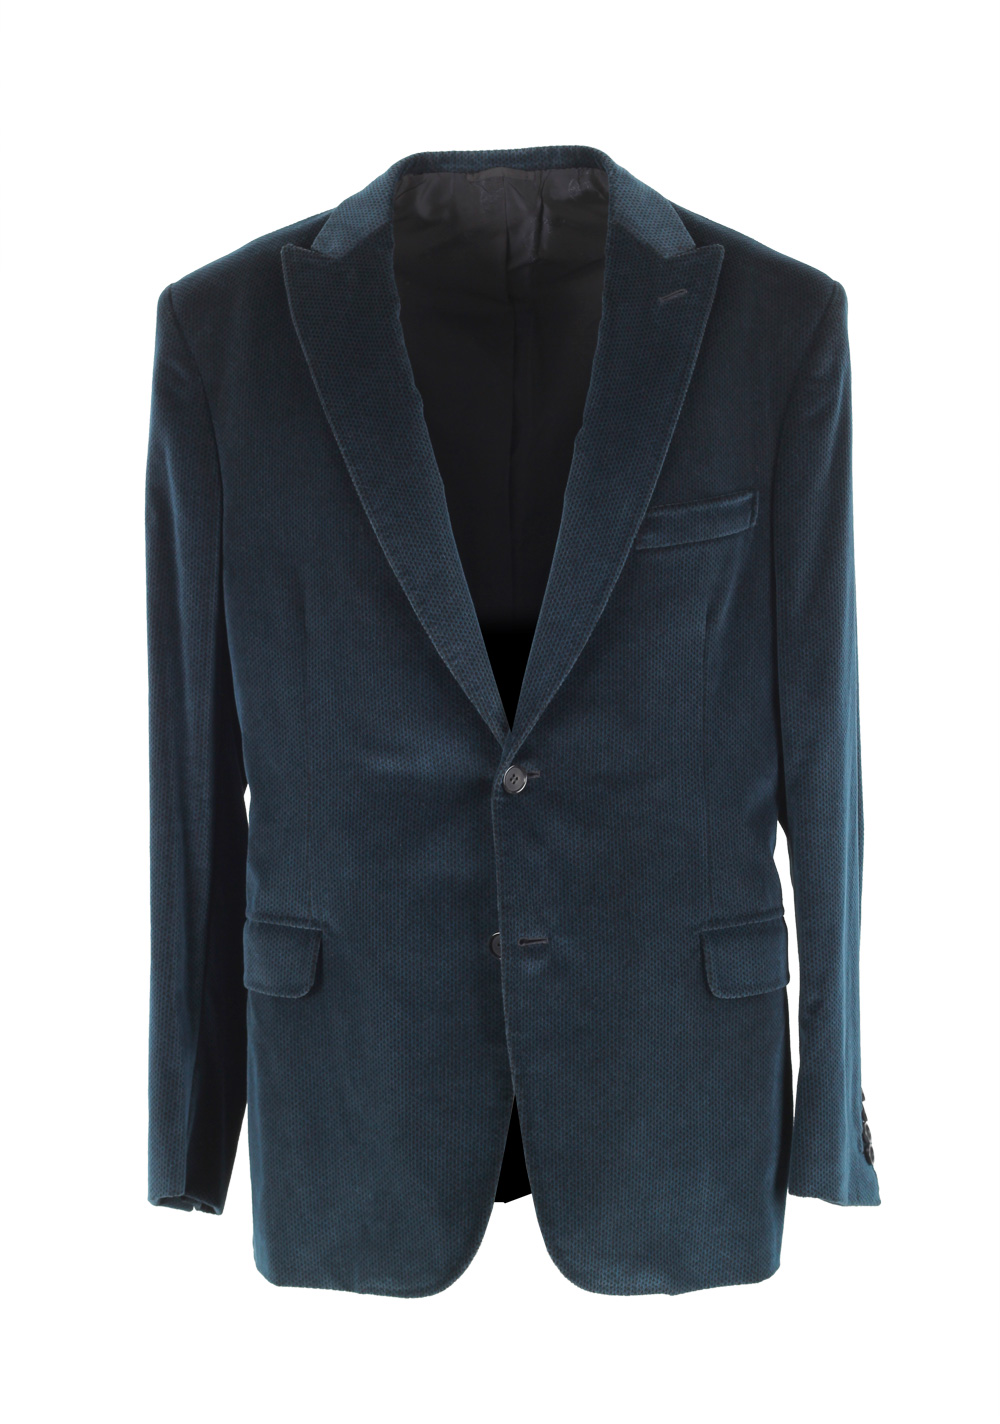 Brioni Bracciano Blue Sport Coat Size 52 / 42R U.S. In Cotton Cashmere | Costume Limité